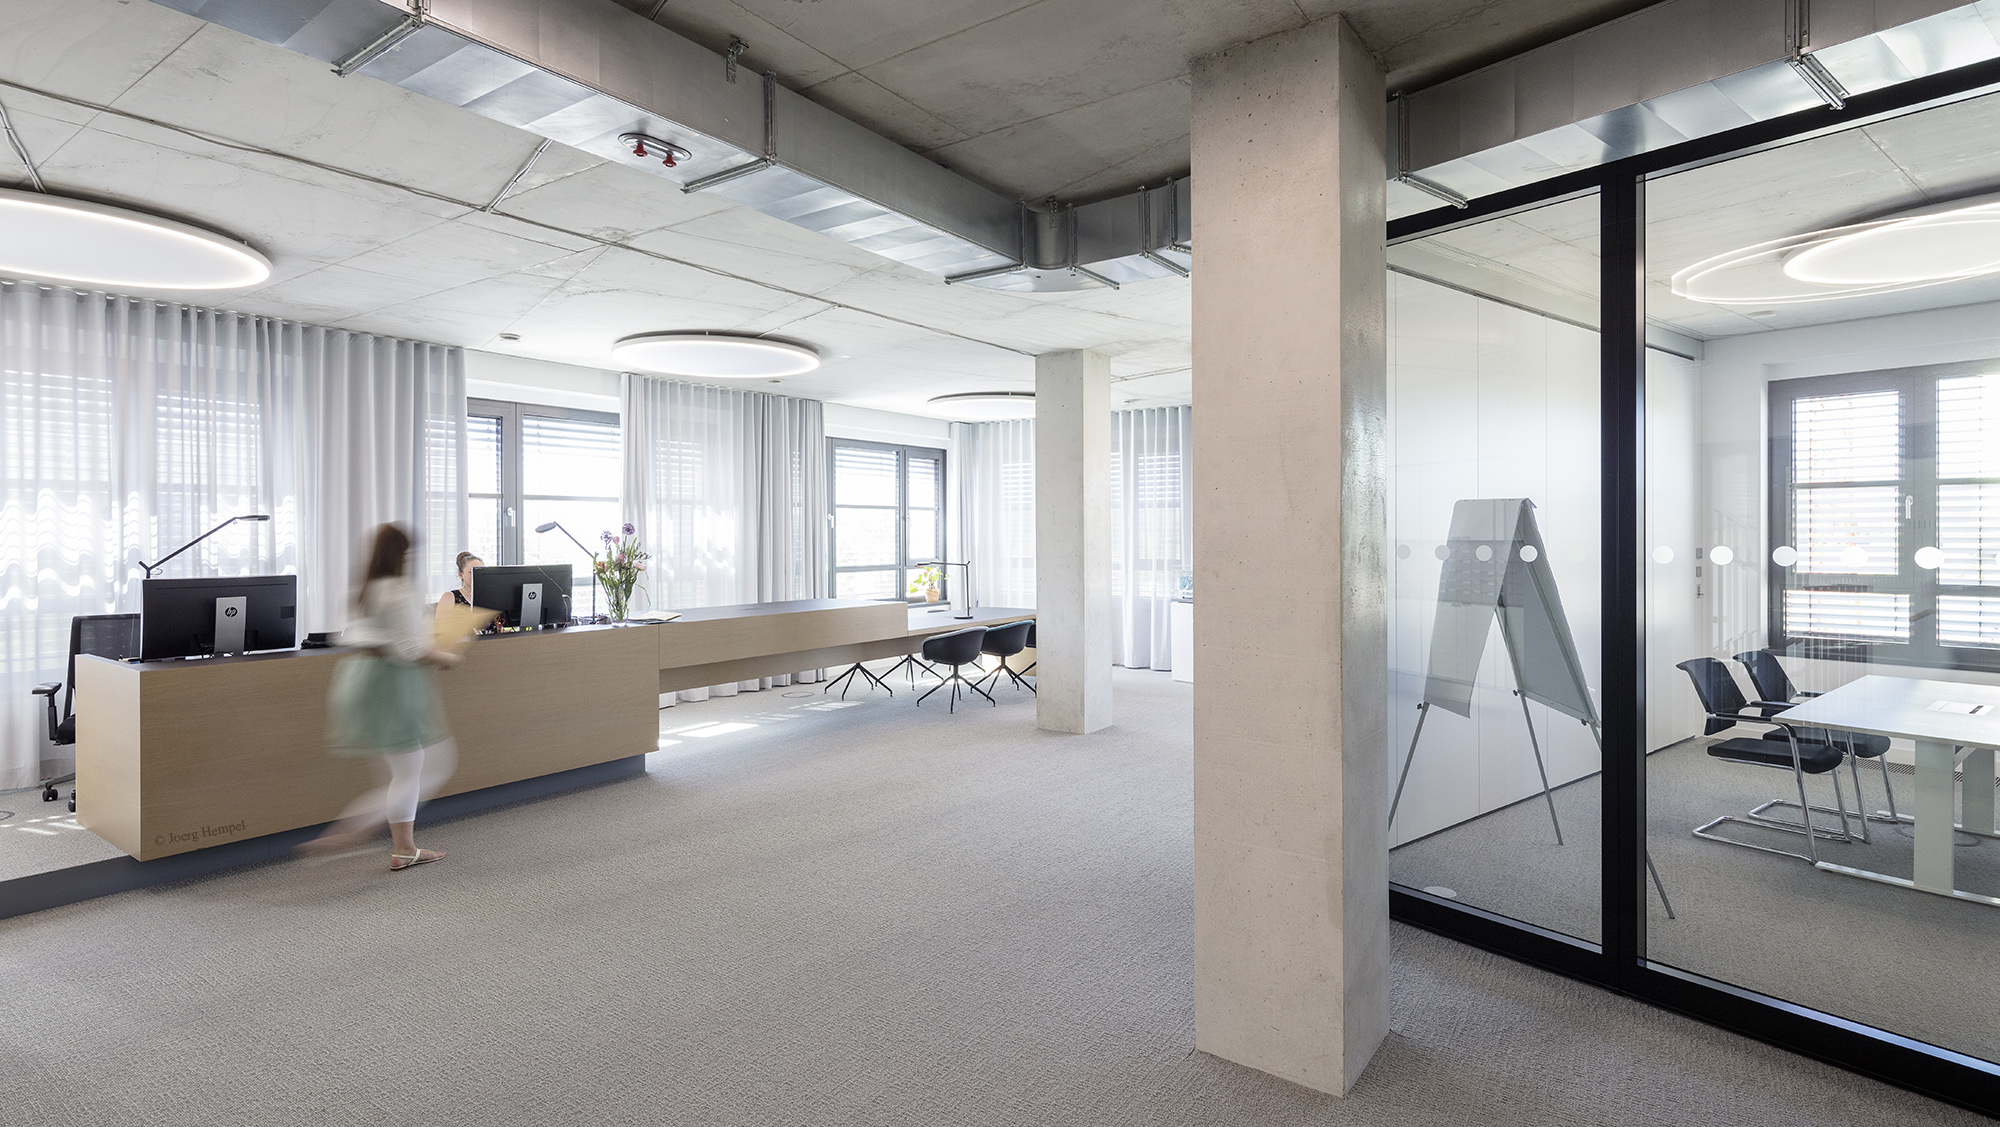 Der Empfangsbereich des Frankfurter Büros ist offen und einladend gestaltet. Der erweiterte Empfangstresen bietet zudem zusätzliche flexible Arbeitsplätze.